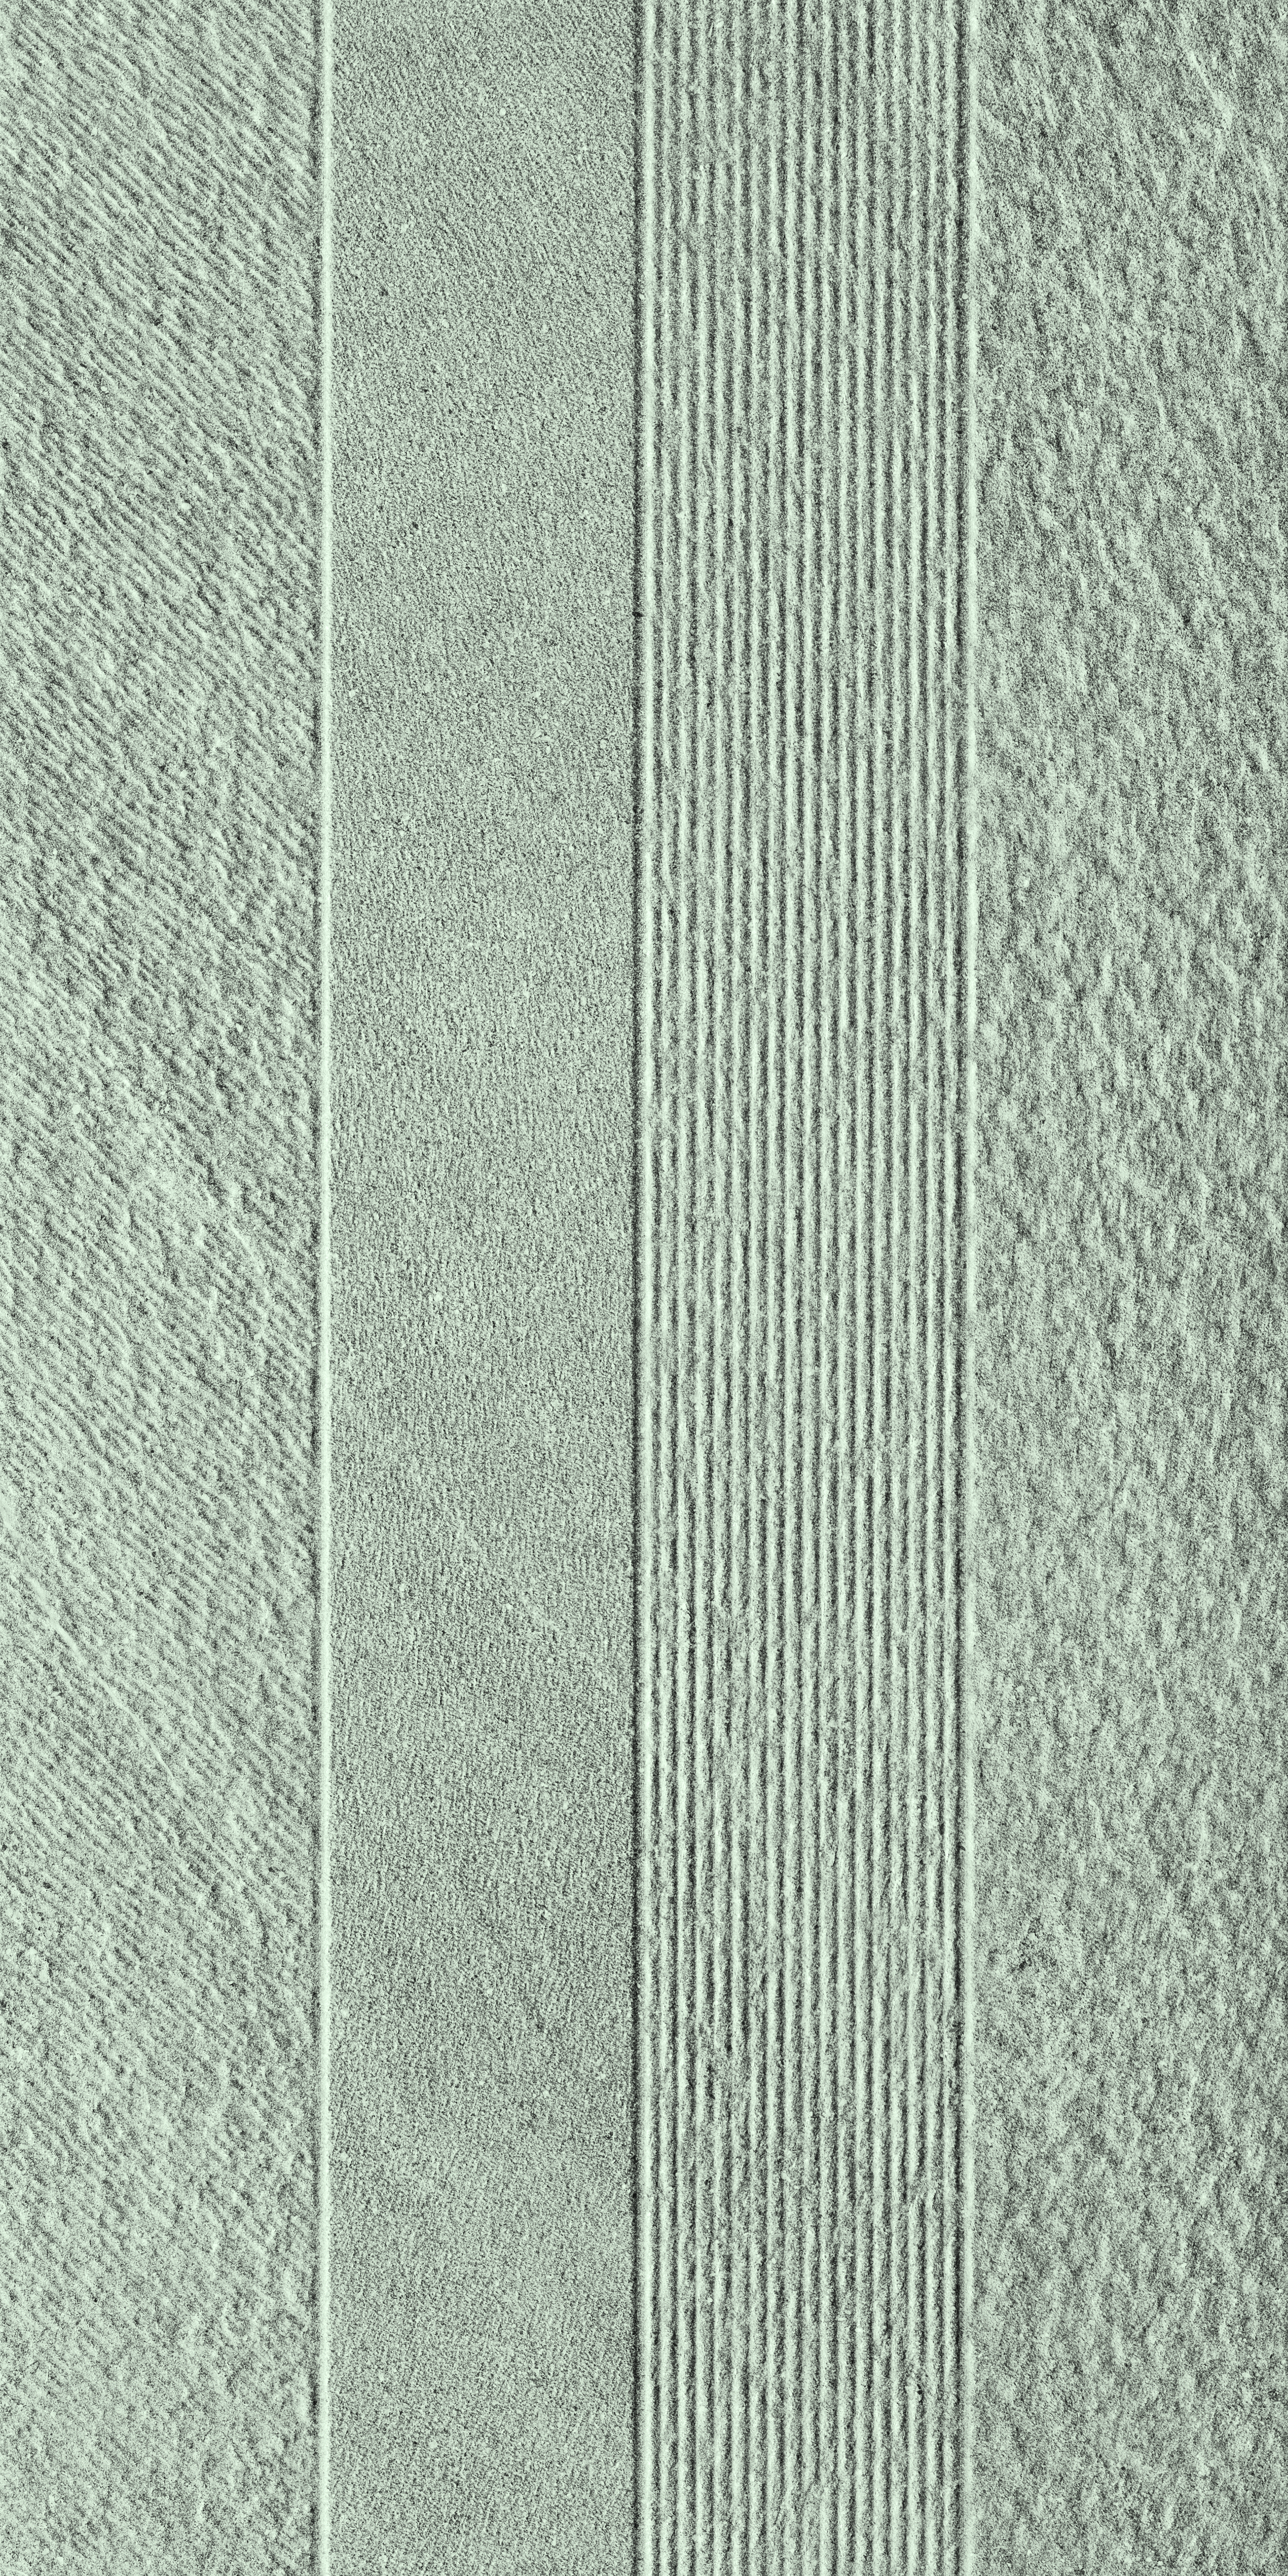 Bodenfliese,Wandfliese Serenissima Eclettica Piombo Naturale Piombo 1081732 natur 60x120cm Frammenti rektifiziert 9,5mm